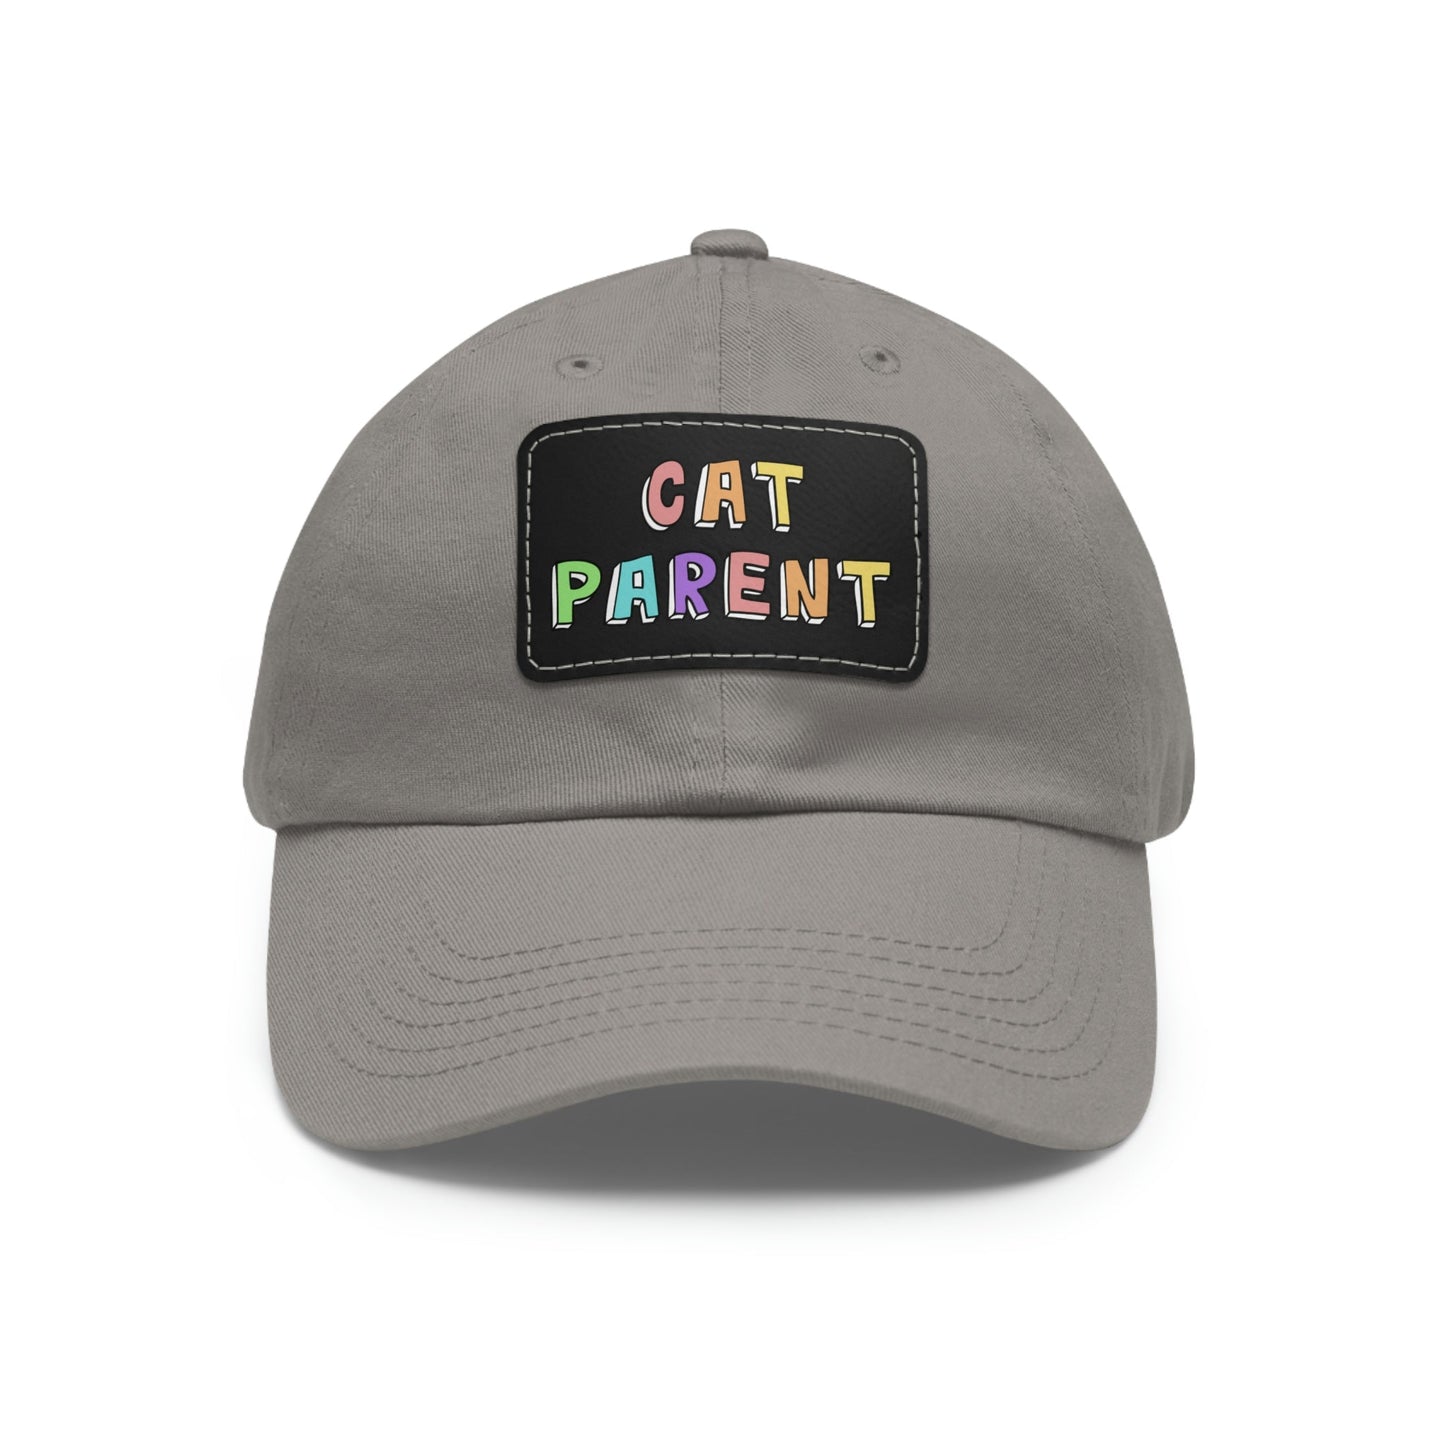 Cat Parent | Dad Hat - Detezi Designs-24594617133267292460